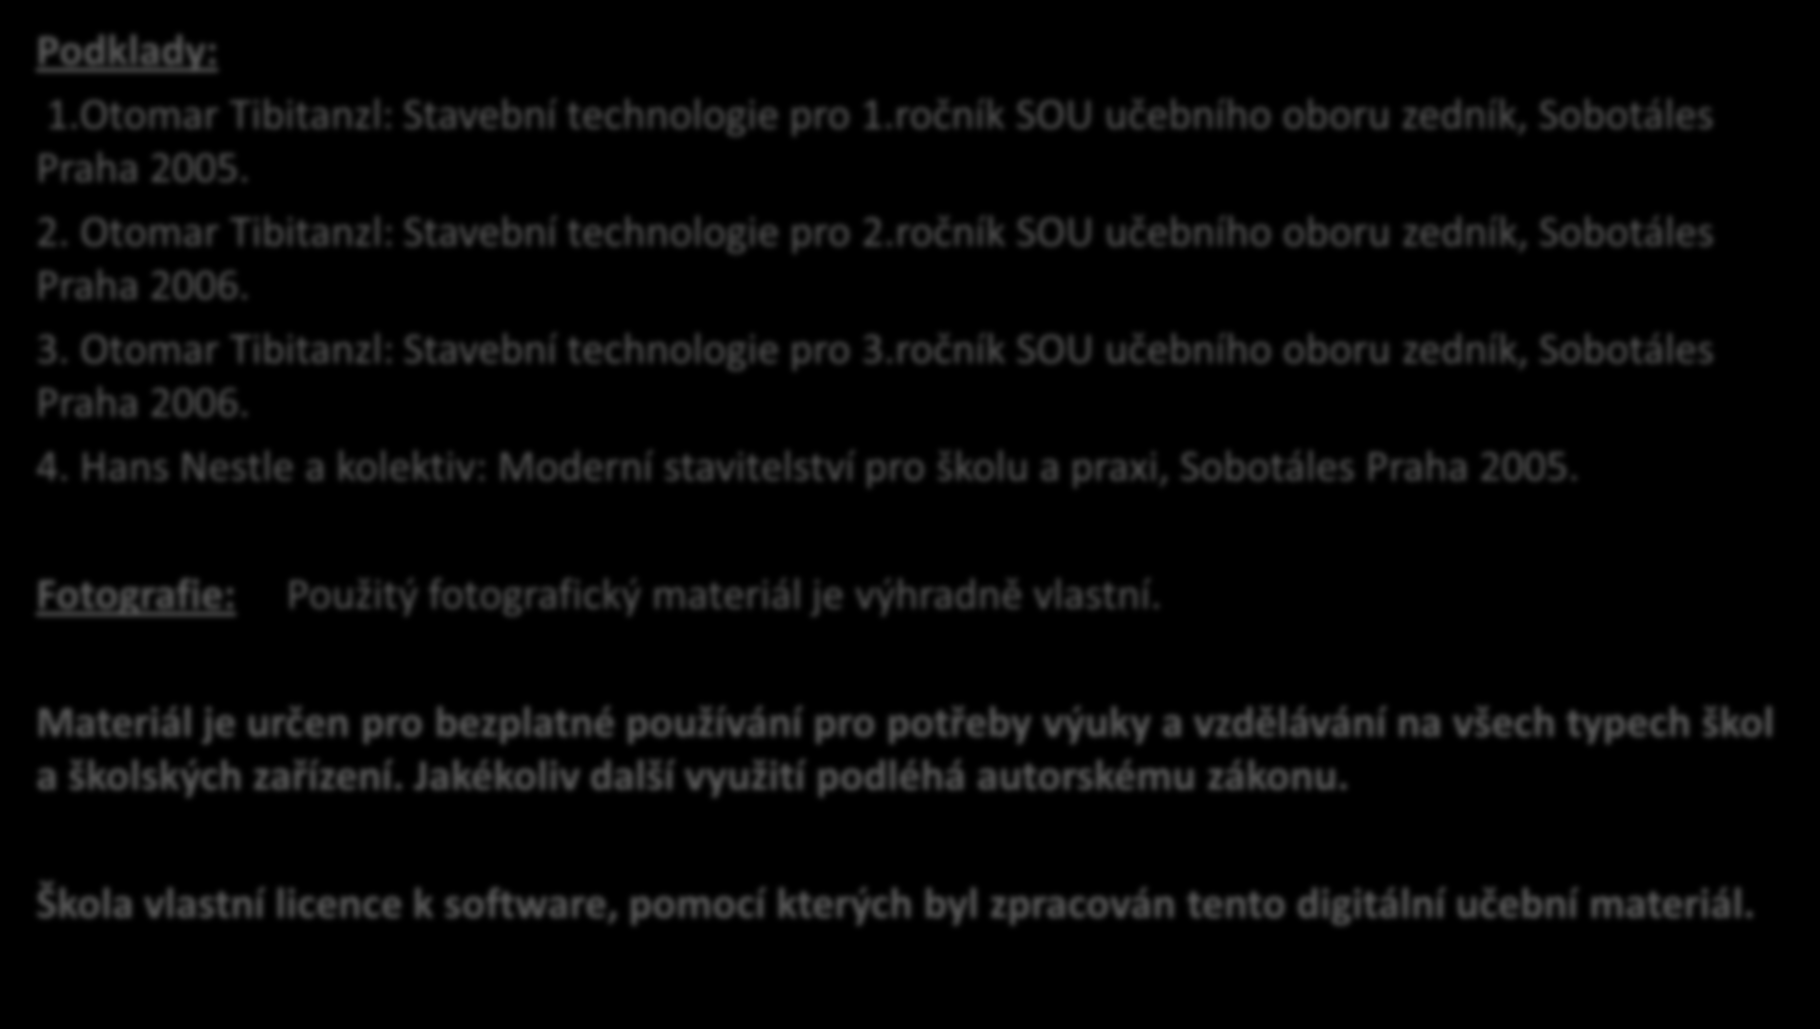 Podklady: 1.Otomar Tibitanzl: Stavební technologie pro 1.ročník SOU učebního oboru zedník, Sobotáles Praha 2005. 2. Otomar Tibitanzl: Stavební technologie pro 2.